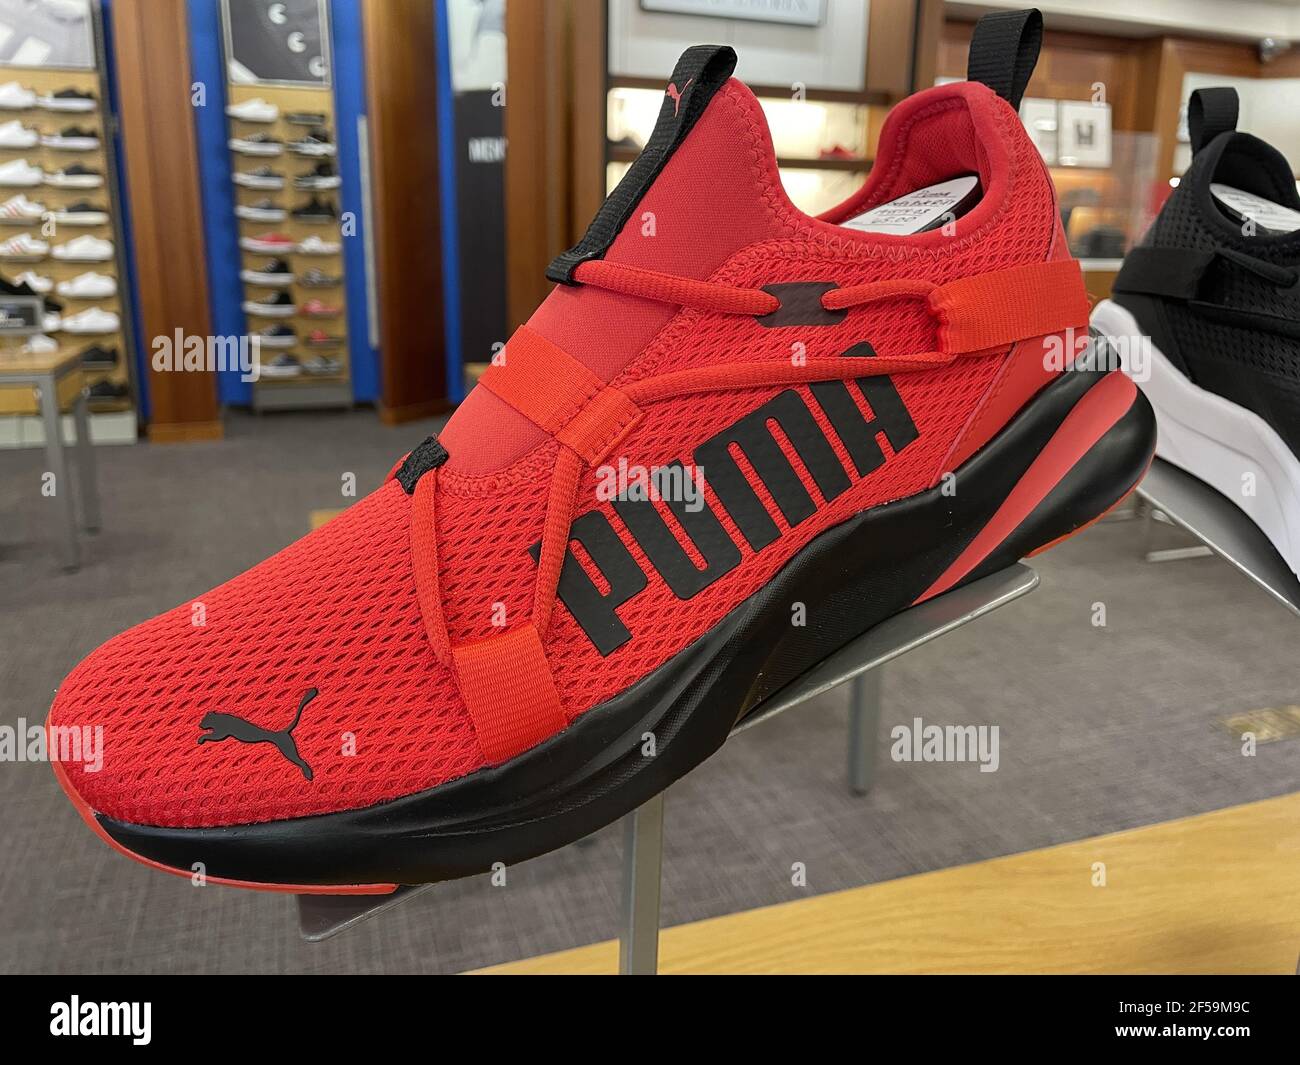 FRESN, USA - Mar 24, 2021: Ein Foto der Neuheiten von PUMA Schuhe in ganz  rot mit schwarzem Besatz Herrenschuhe März 24, 2021 Stockfotografie - Alamy